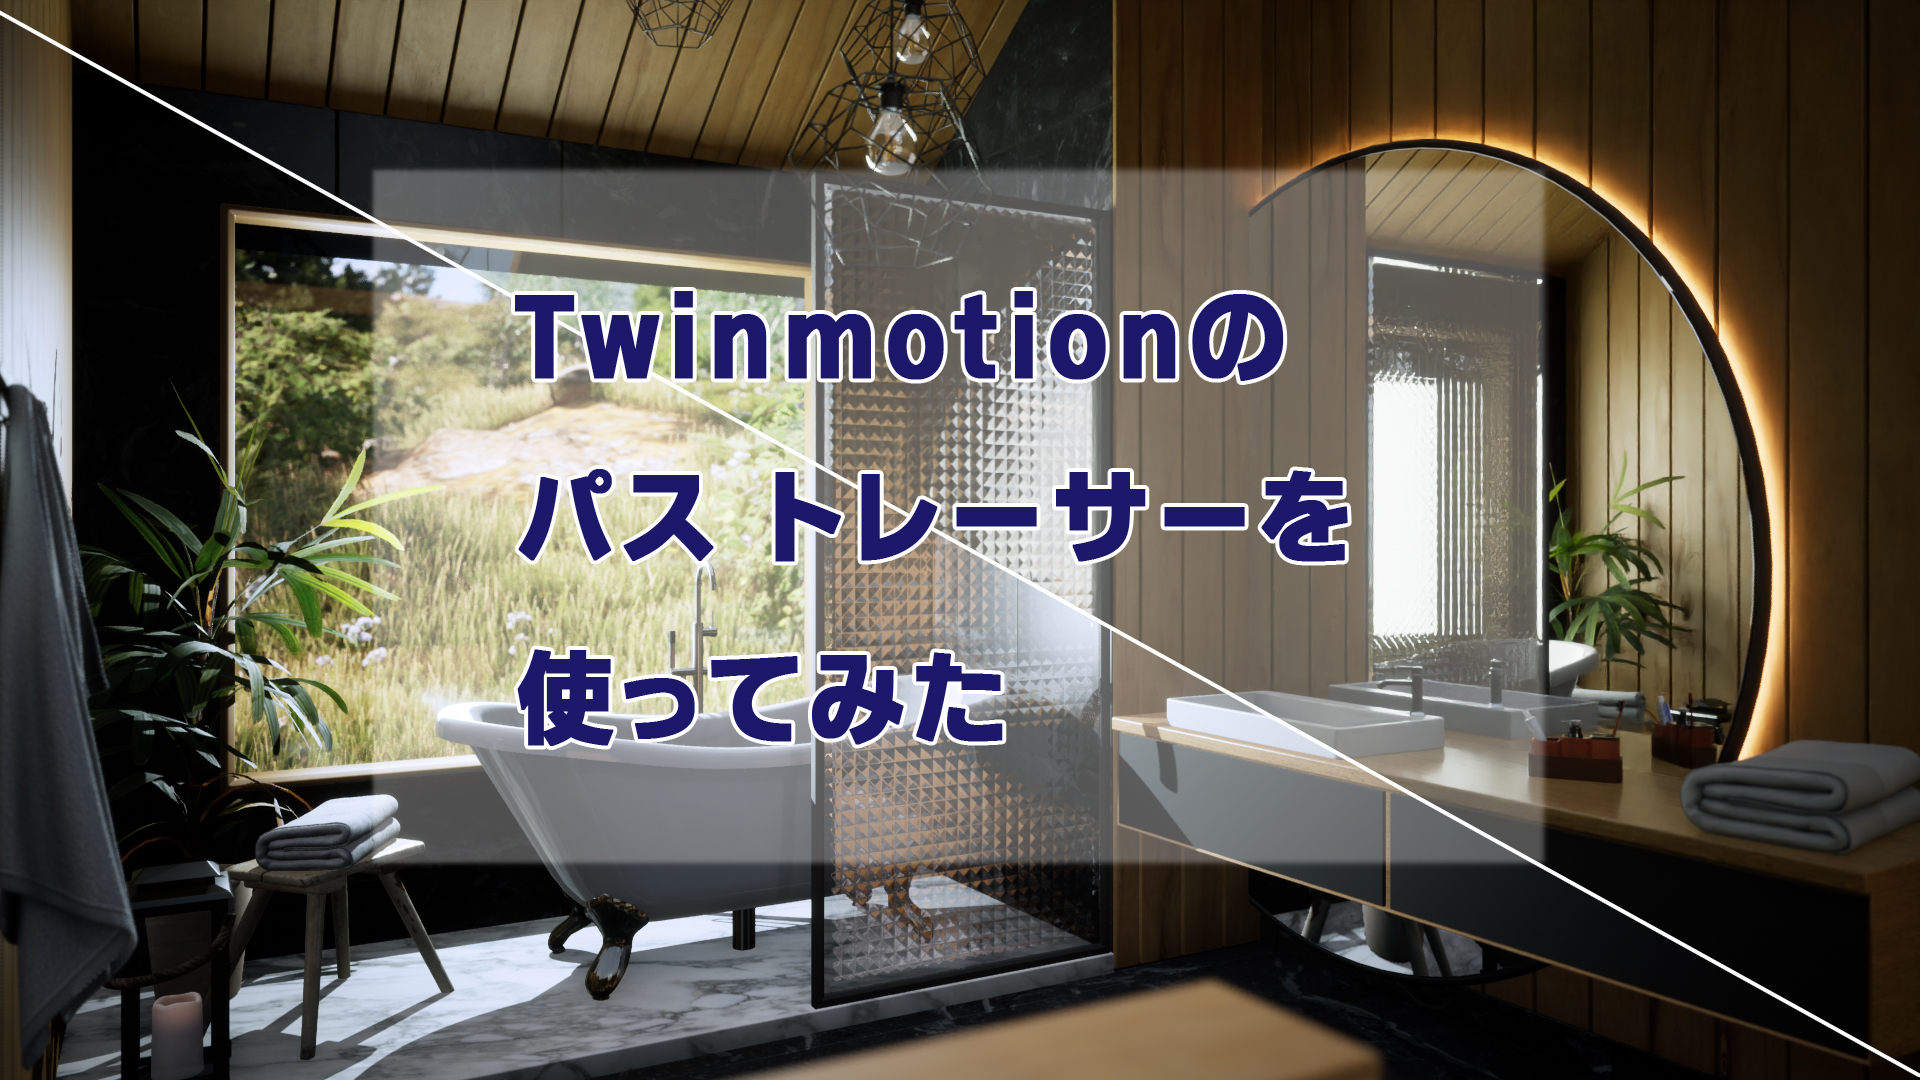 【Twinmotion】パストレーサーのお手並み拝見